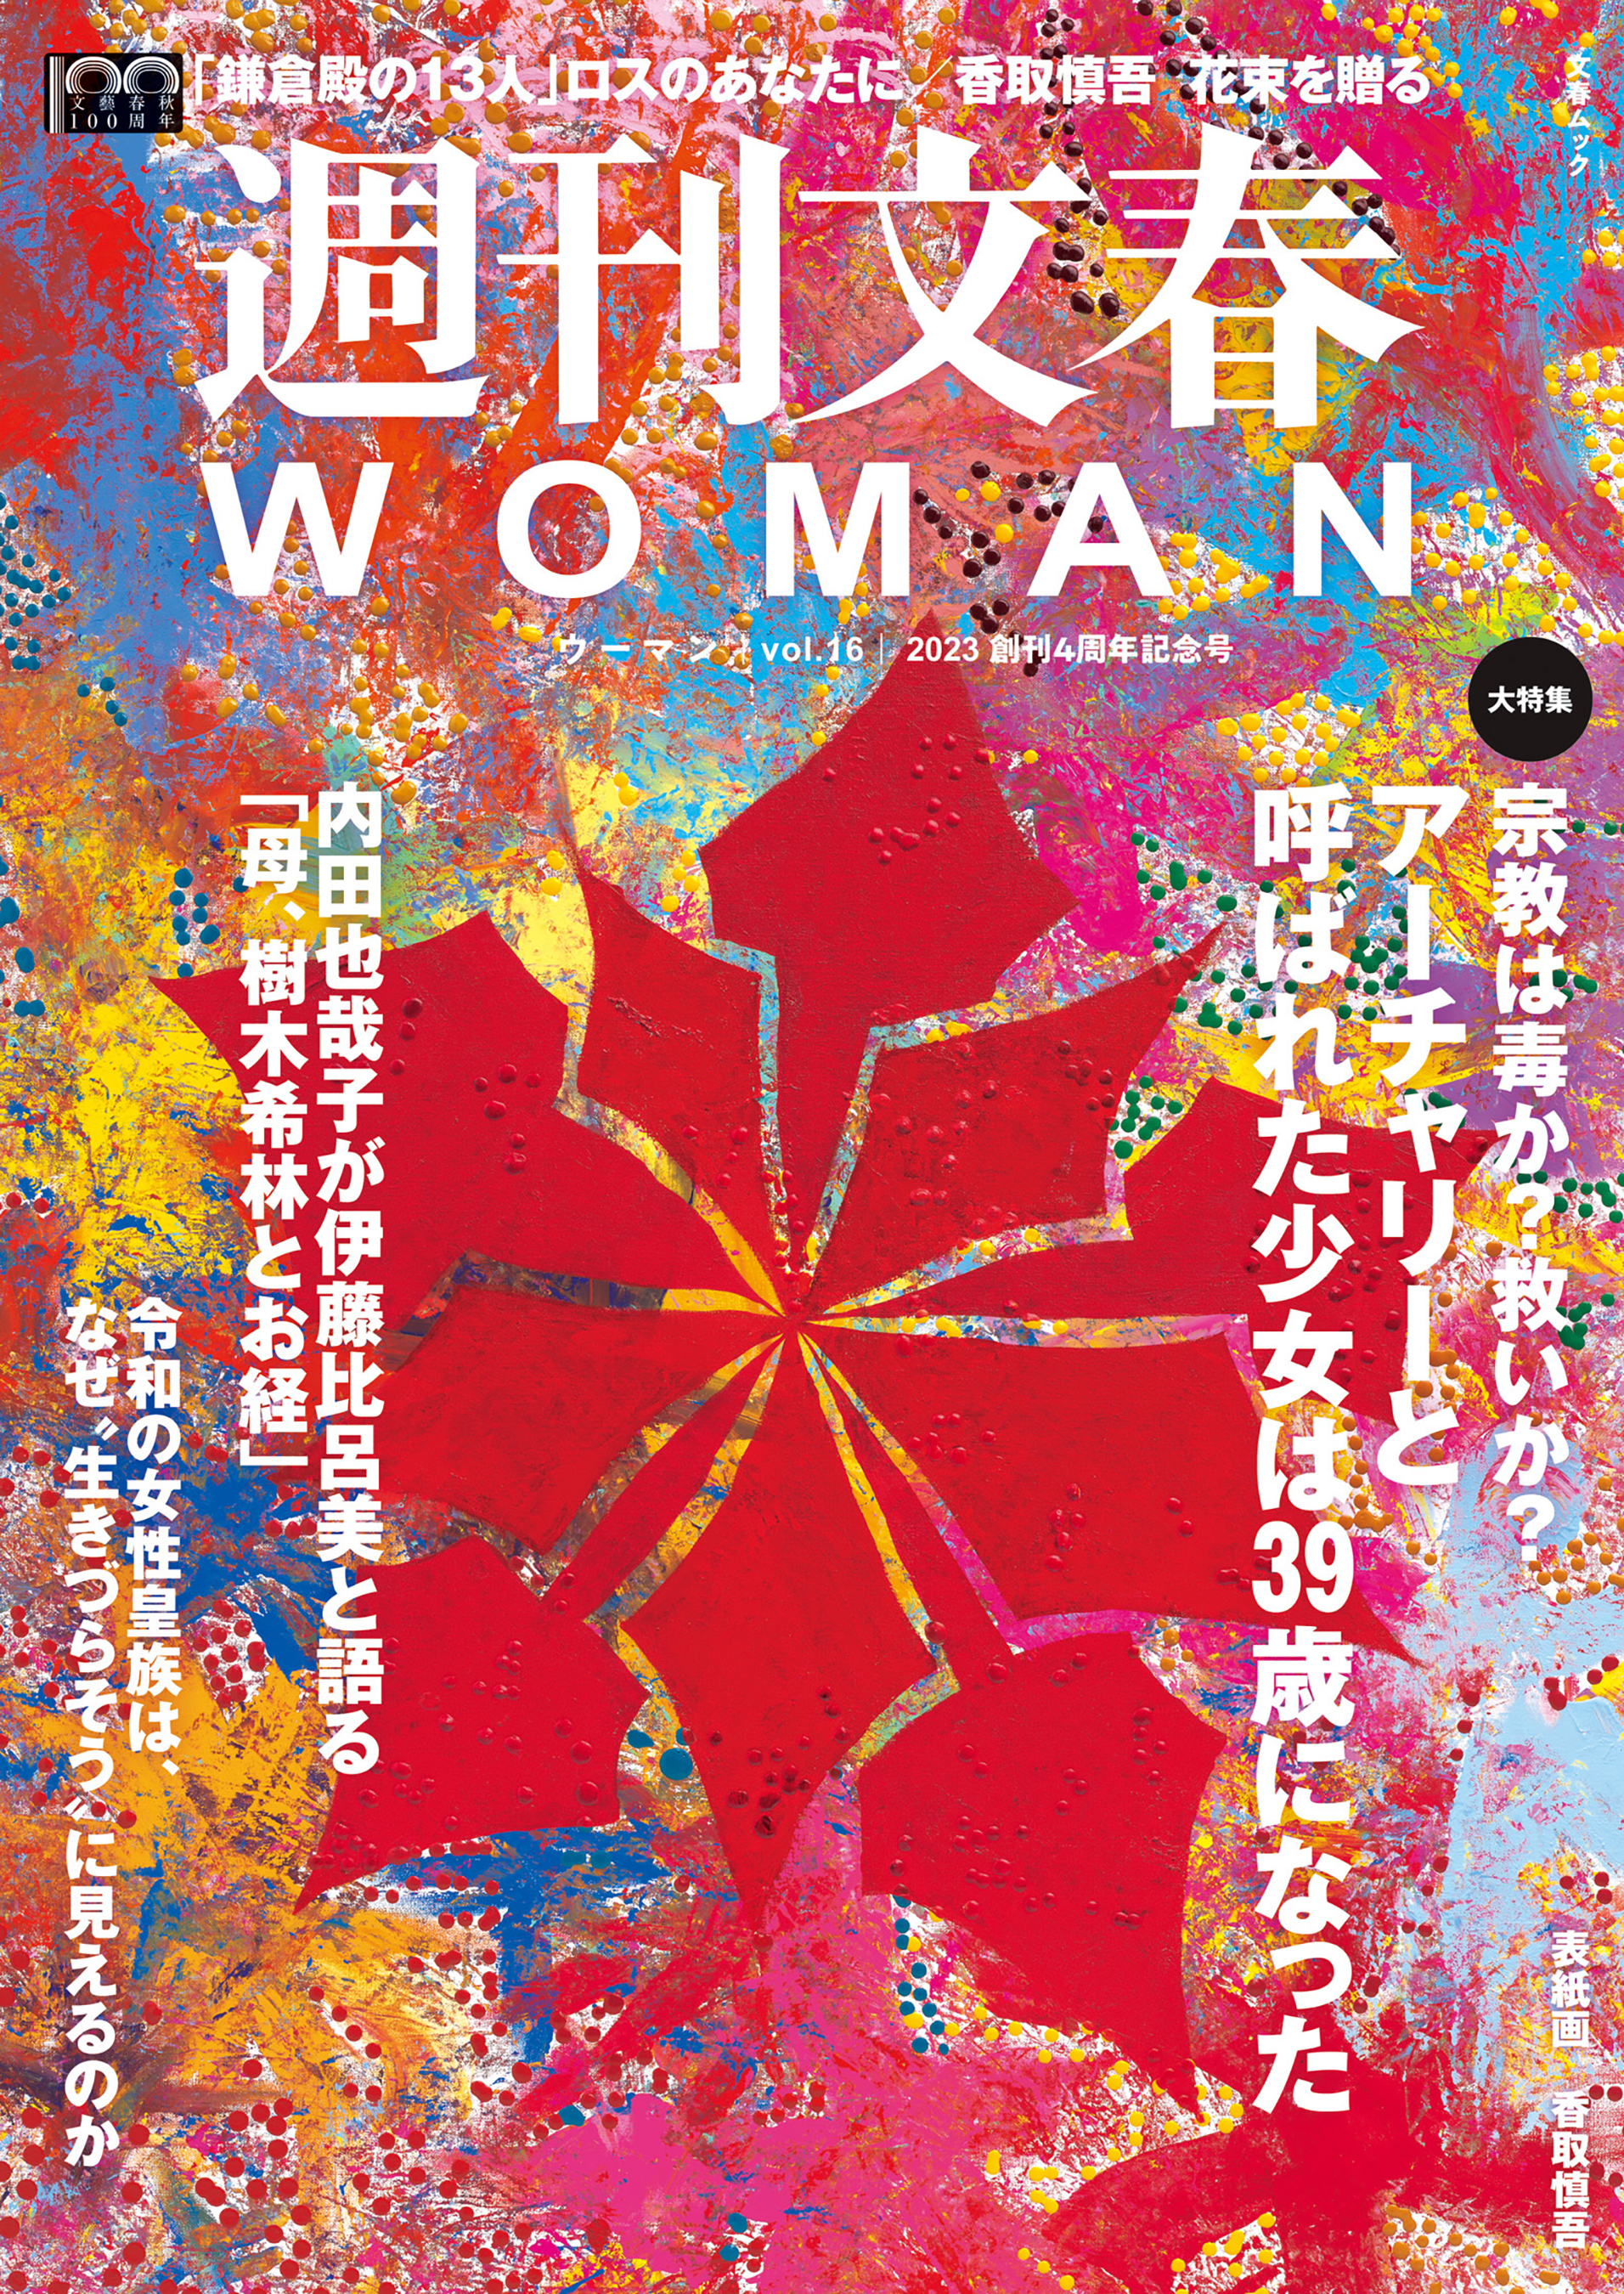 週刊文春 WOMAN vol.16 創刊4周年記念号 - 文藝春秋 - 漫画・ラノベ ...